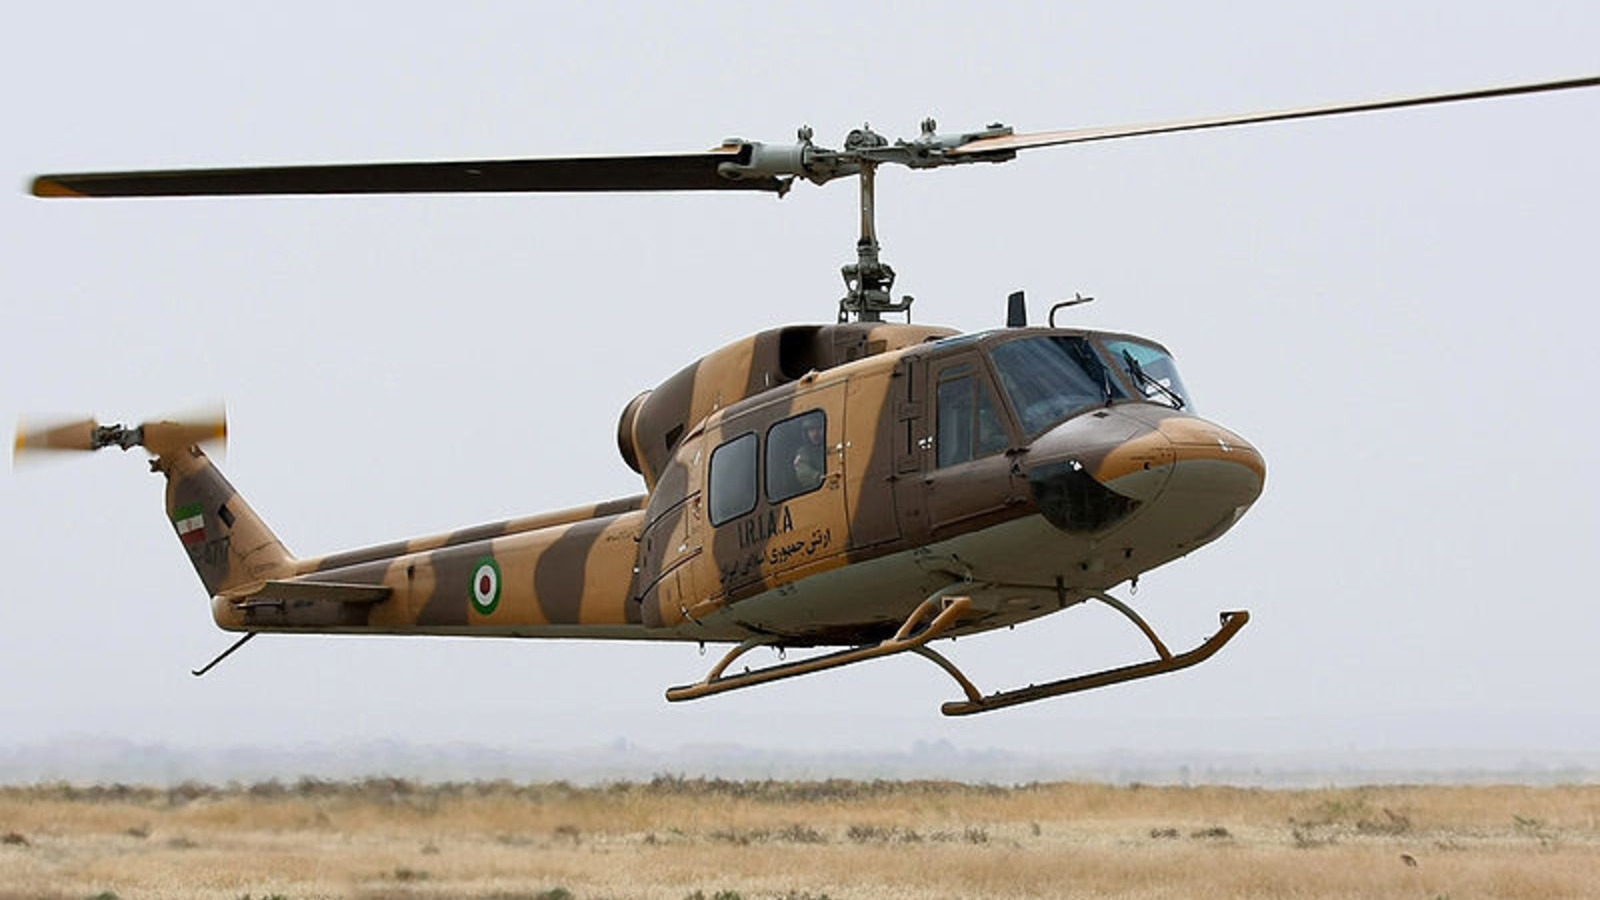 El irregular historial de seguridad del helicóptero que se estrelló llevando al presidente de Irán